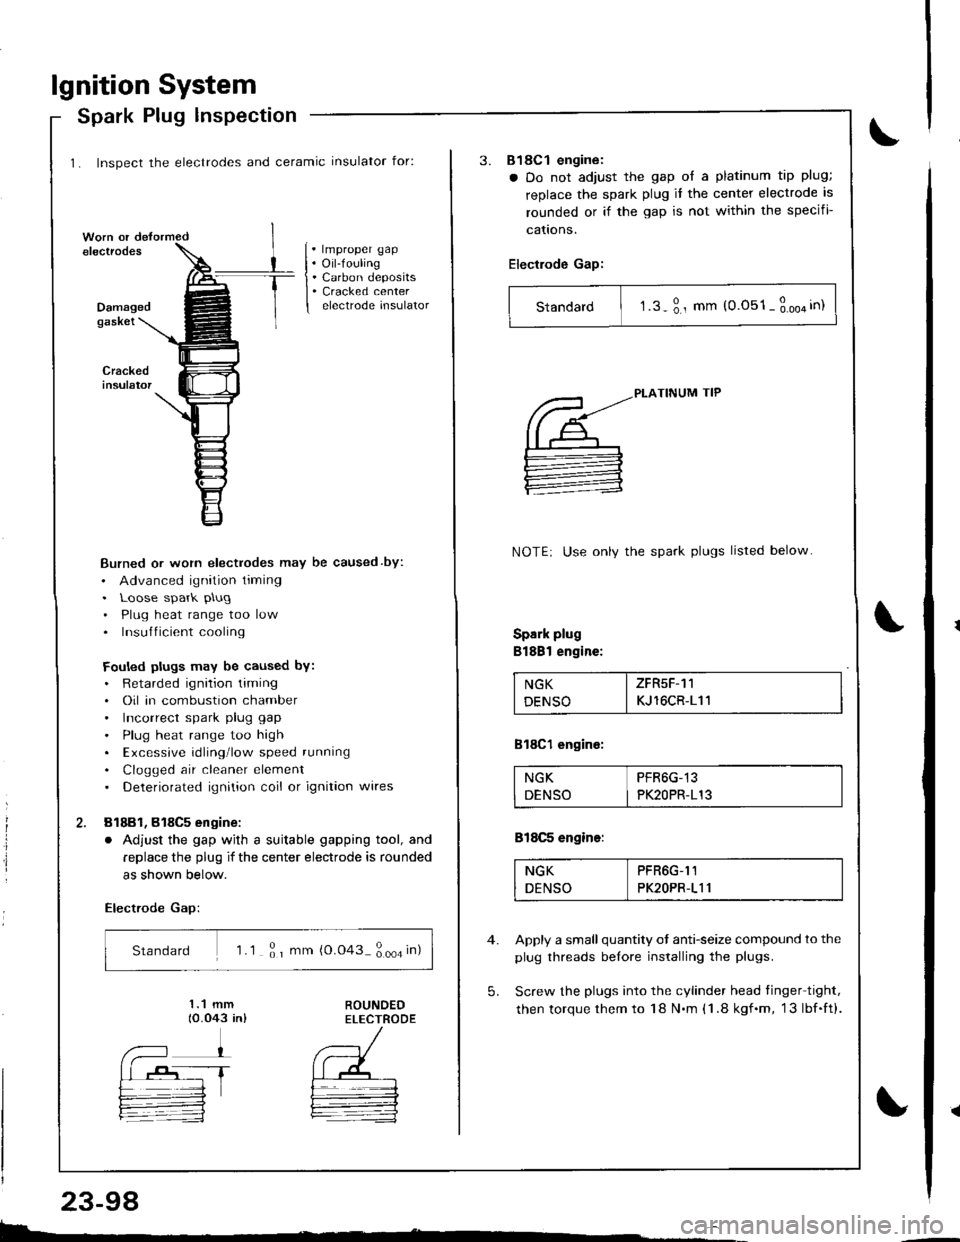 HONDA INTEGRA 1998 4.G Workshop Manual lgnition System
1. Inspect the electrodes and ceramic insulator for:
Spark Plug lnspection
. lmproper gap. Oil-fouling. Carbon deposits. Cracked centerelectrode insulatorDamagedgaskei
Burned or worn e